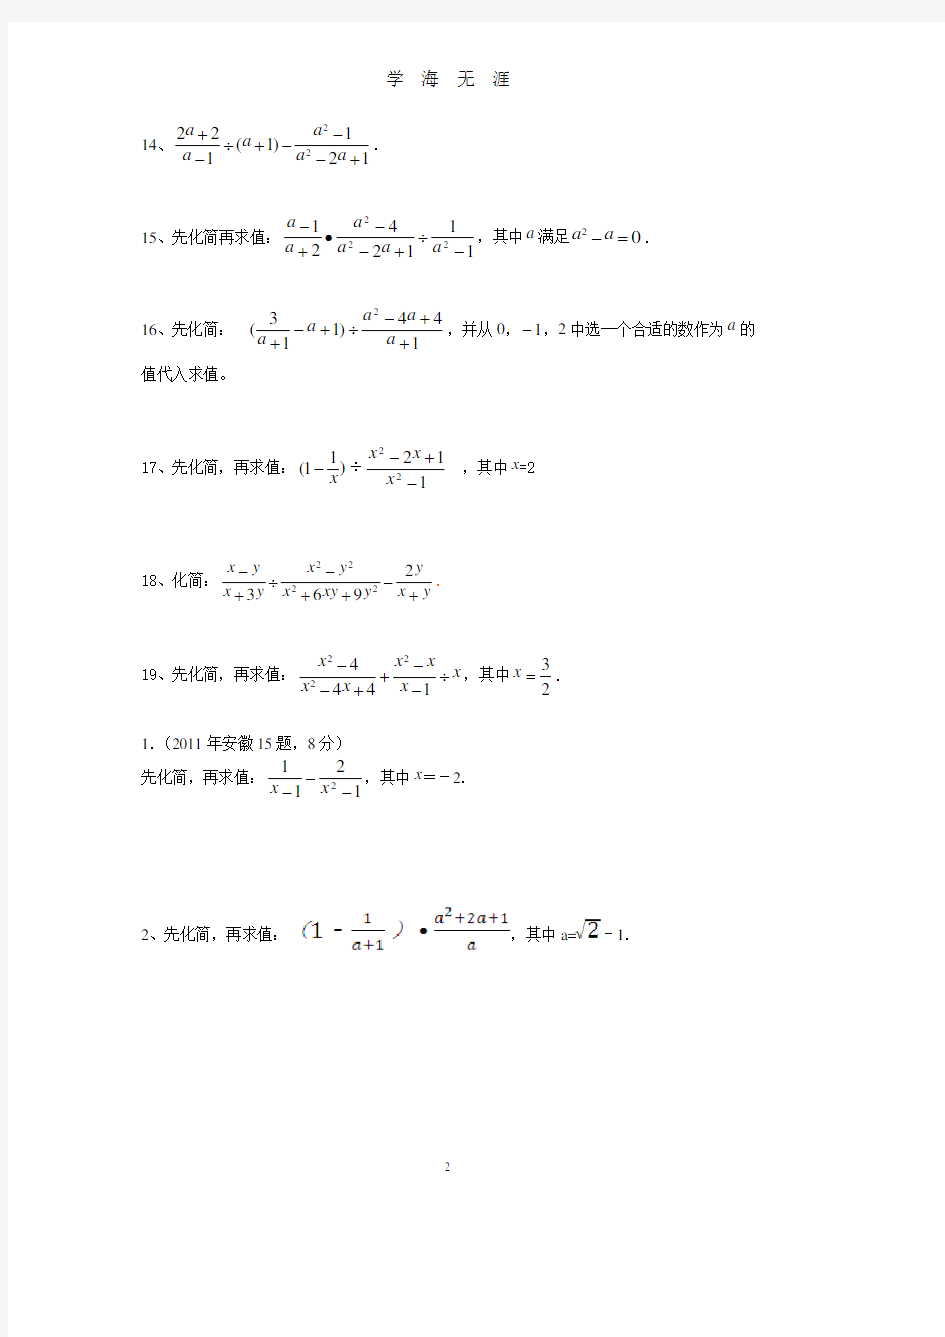 初三数学中考专项化简求值练习题(2020年8月整理).pdf